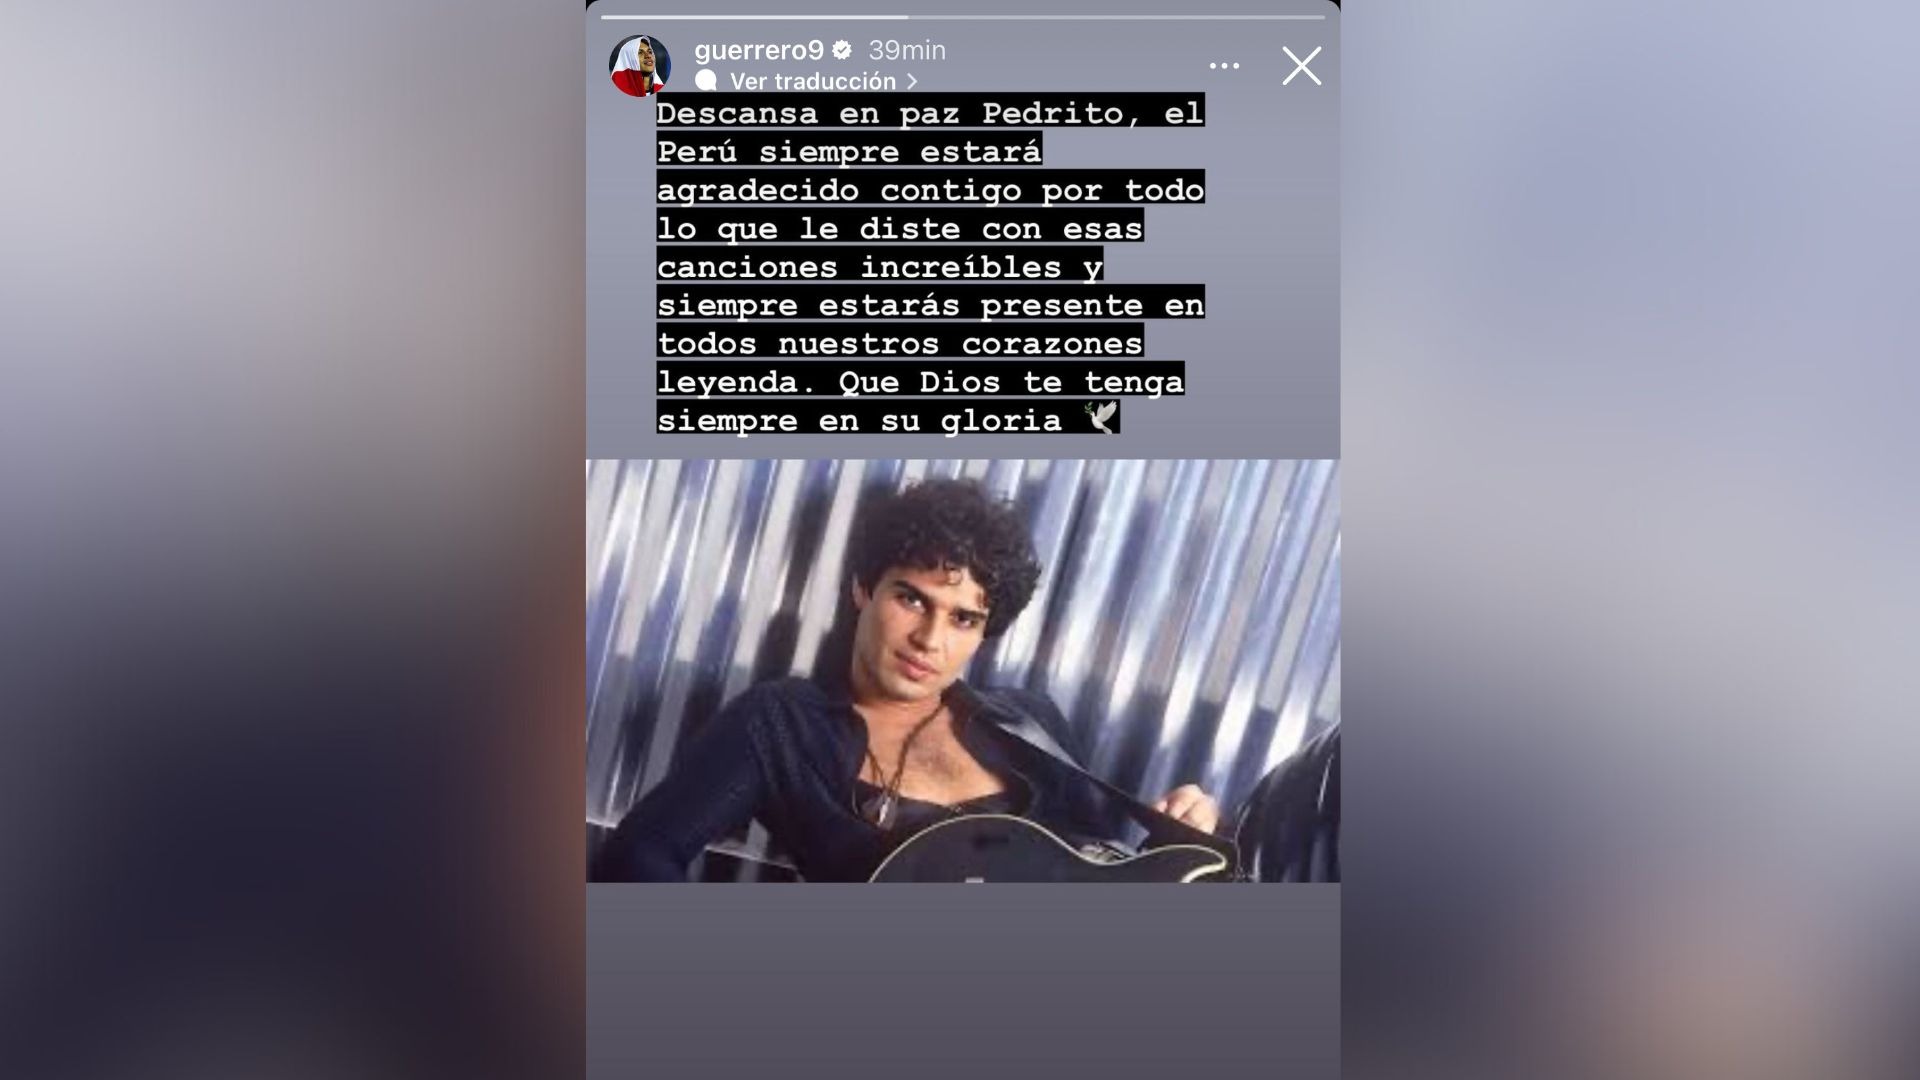 Paolo Guerrero publicó este mensaje despidiéndose del cantante peruano fallecido el último jueves / Foto: @guerrero9